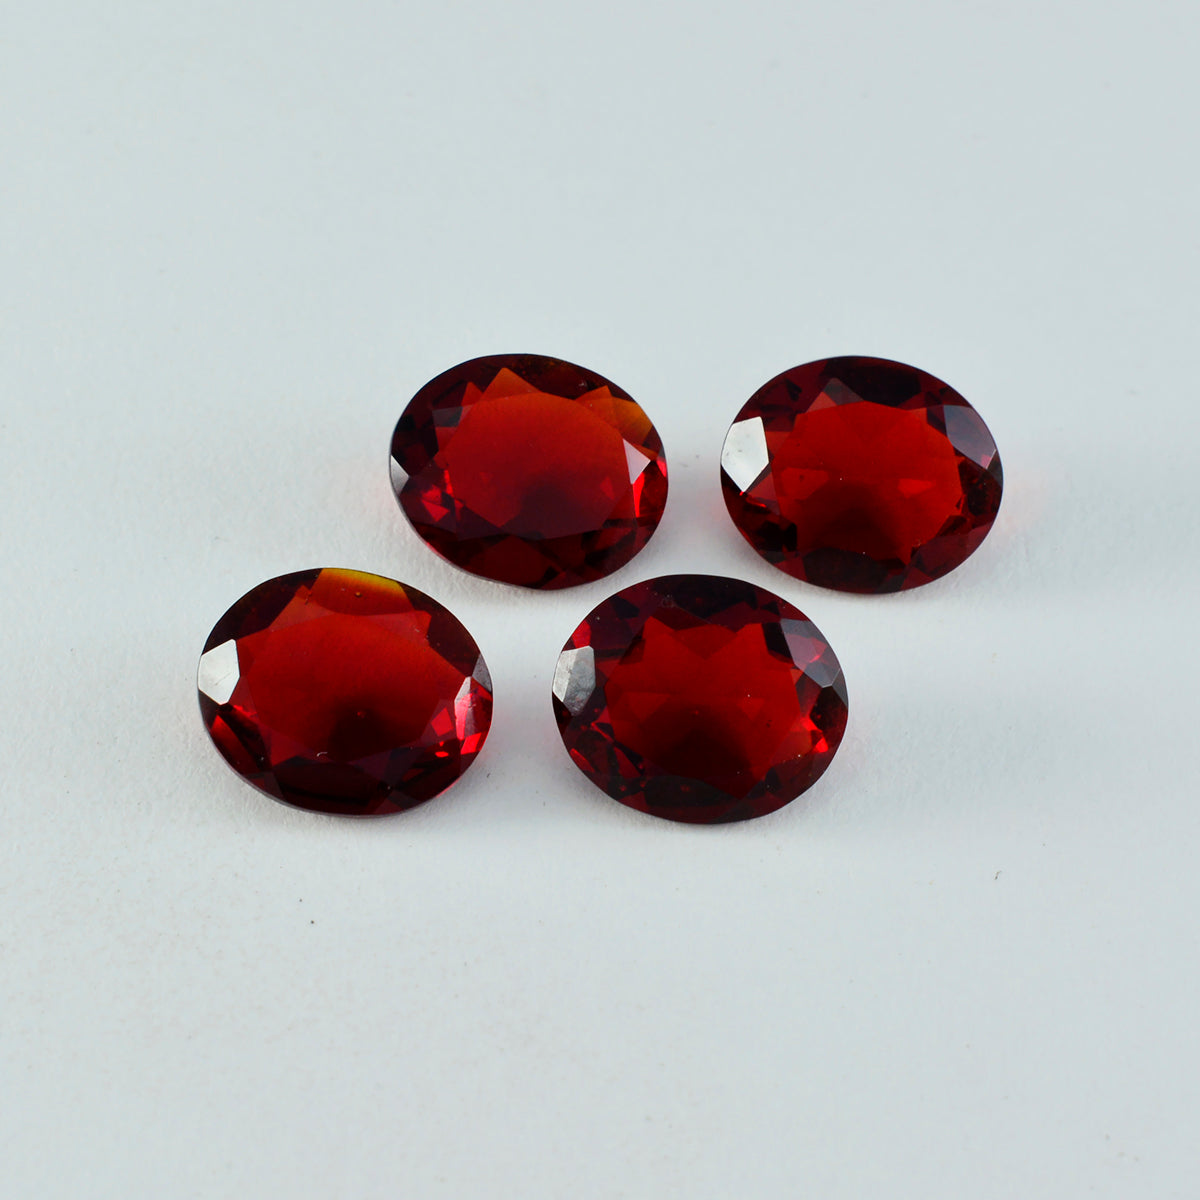 Riyogems 1 Stück roter Rubin mit CZ, facettiert, 9 x 11 mm, ovale Form, tolle Qualität, loser Edelstein